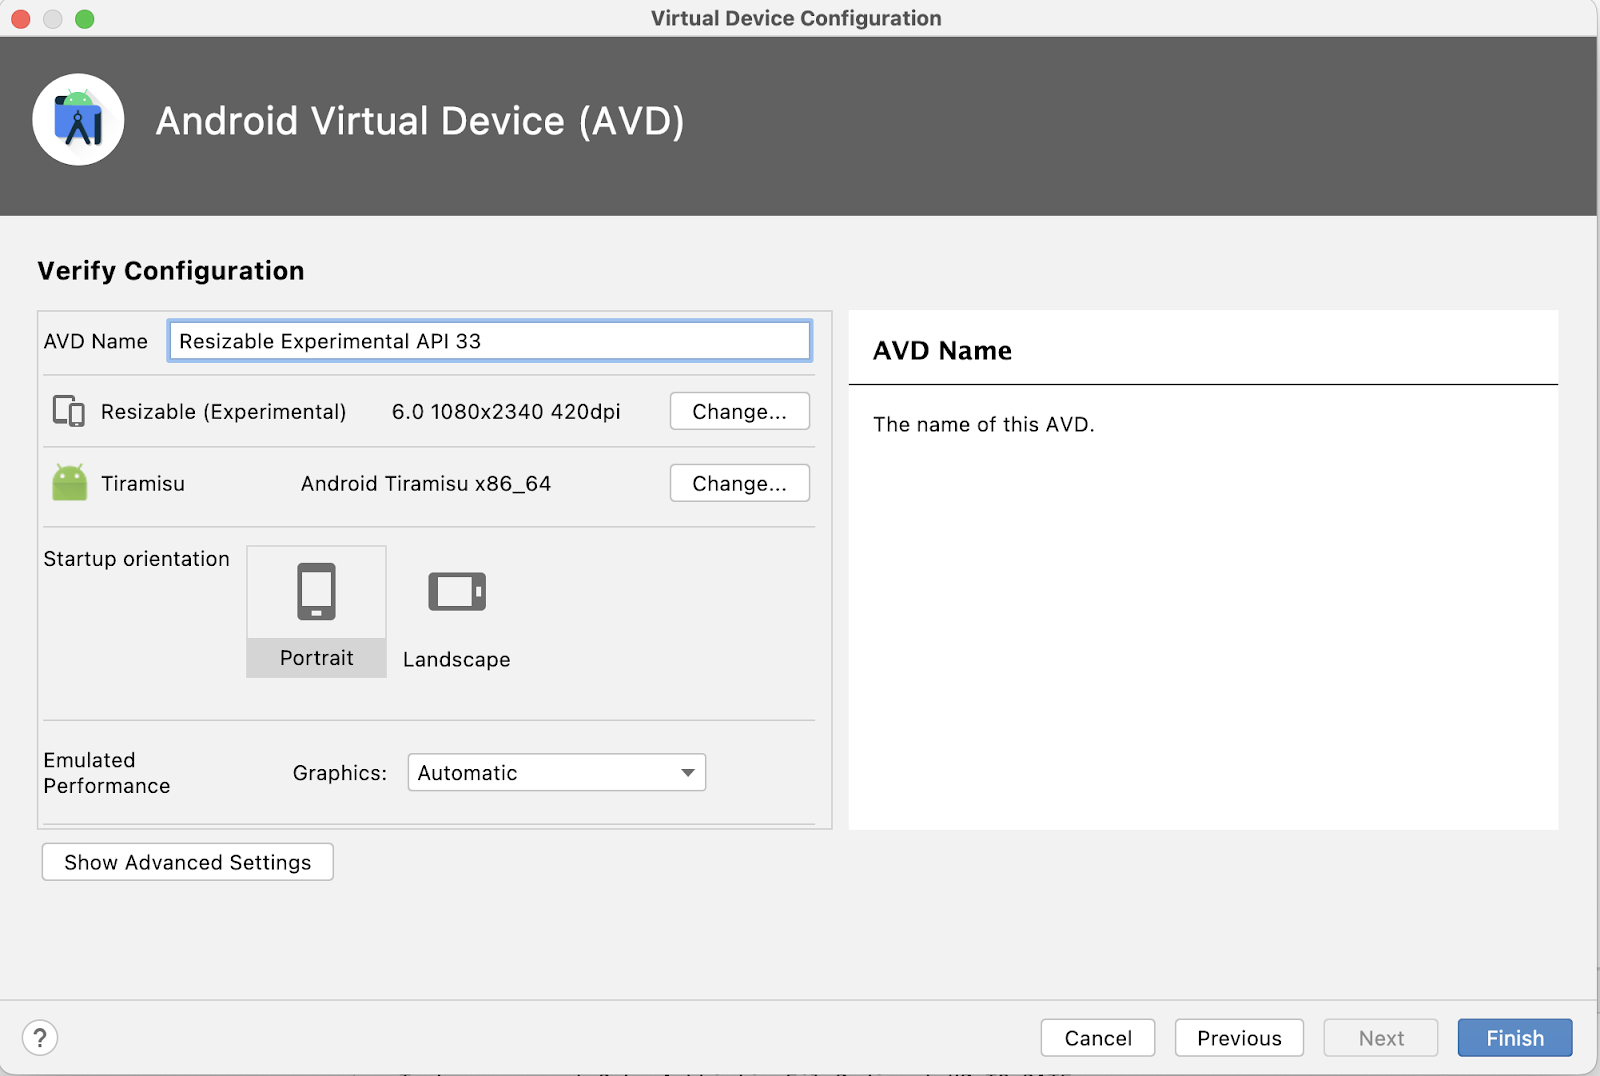 Android Virtural Device（AVD）の [Virtual Configration] 画面が表示されています。設定画面には、AVD 名を入力するためのテキスト フィールドがあります。名前フィールドの下には、デバイス定義（Resizable Experimental）、システム イメージ（Tiramisu）、画面の向き（デフォルトの Portrait が選択されている）などのデバイス オプションのリストがあります。デバイス定義とシステム イメージ情報の右側に [Change] ボタンが表示され、選択した Portrait オプションの右側に Landscape オプションが表示されています。右下に [Cancel]、[Previous]、[Next]（グレー表示され、選択不可）、[Finish] の 4 つのボタンがあります。